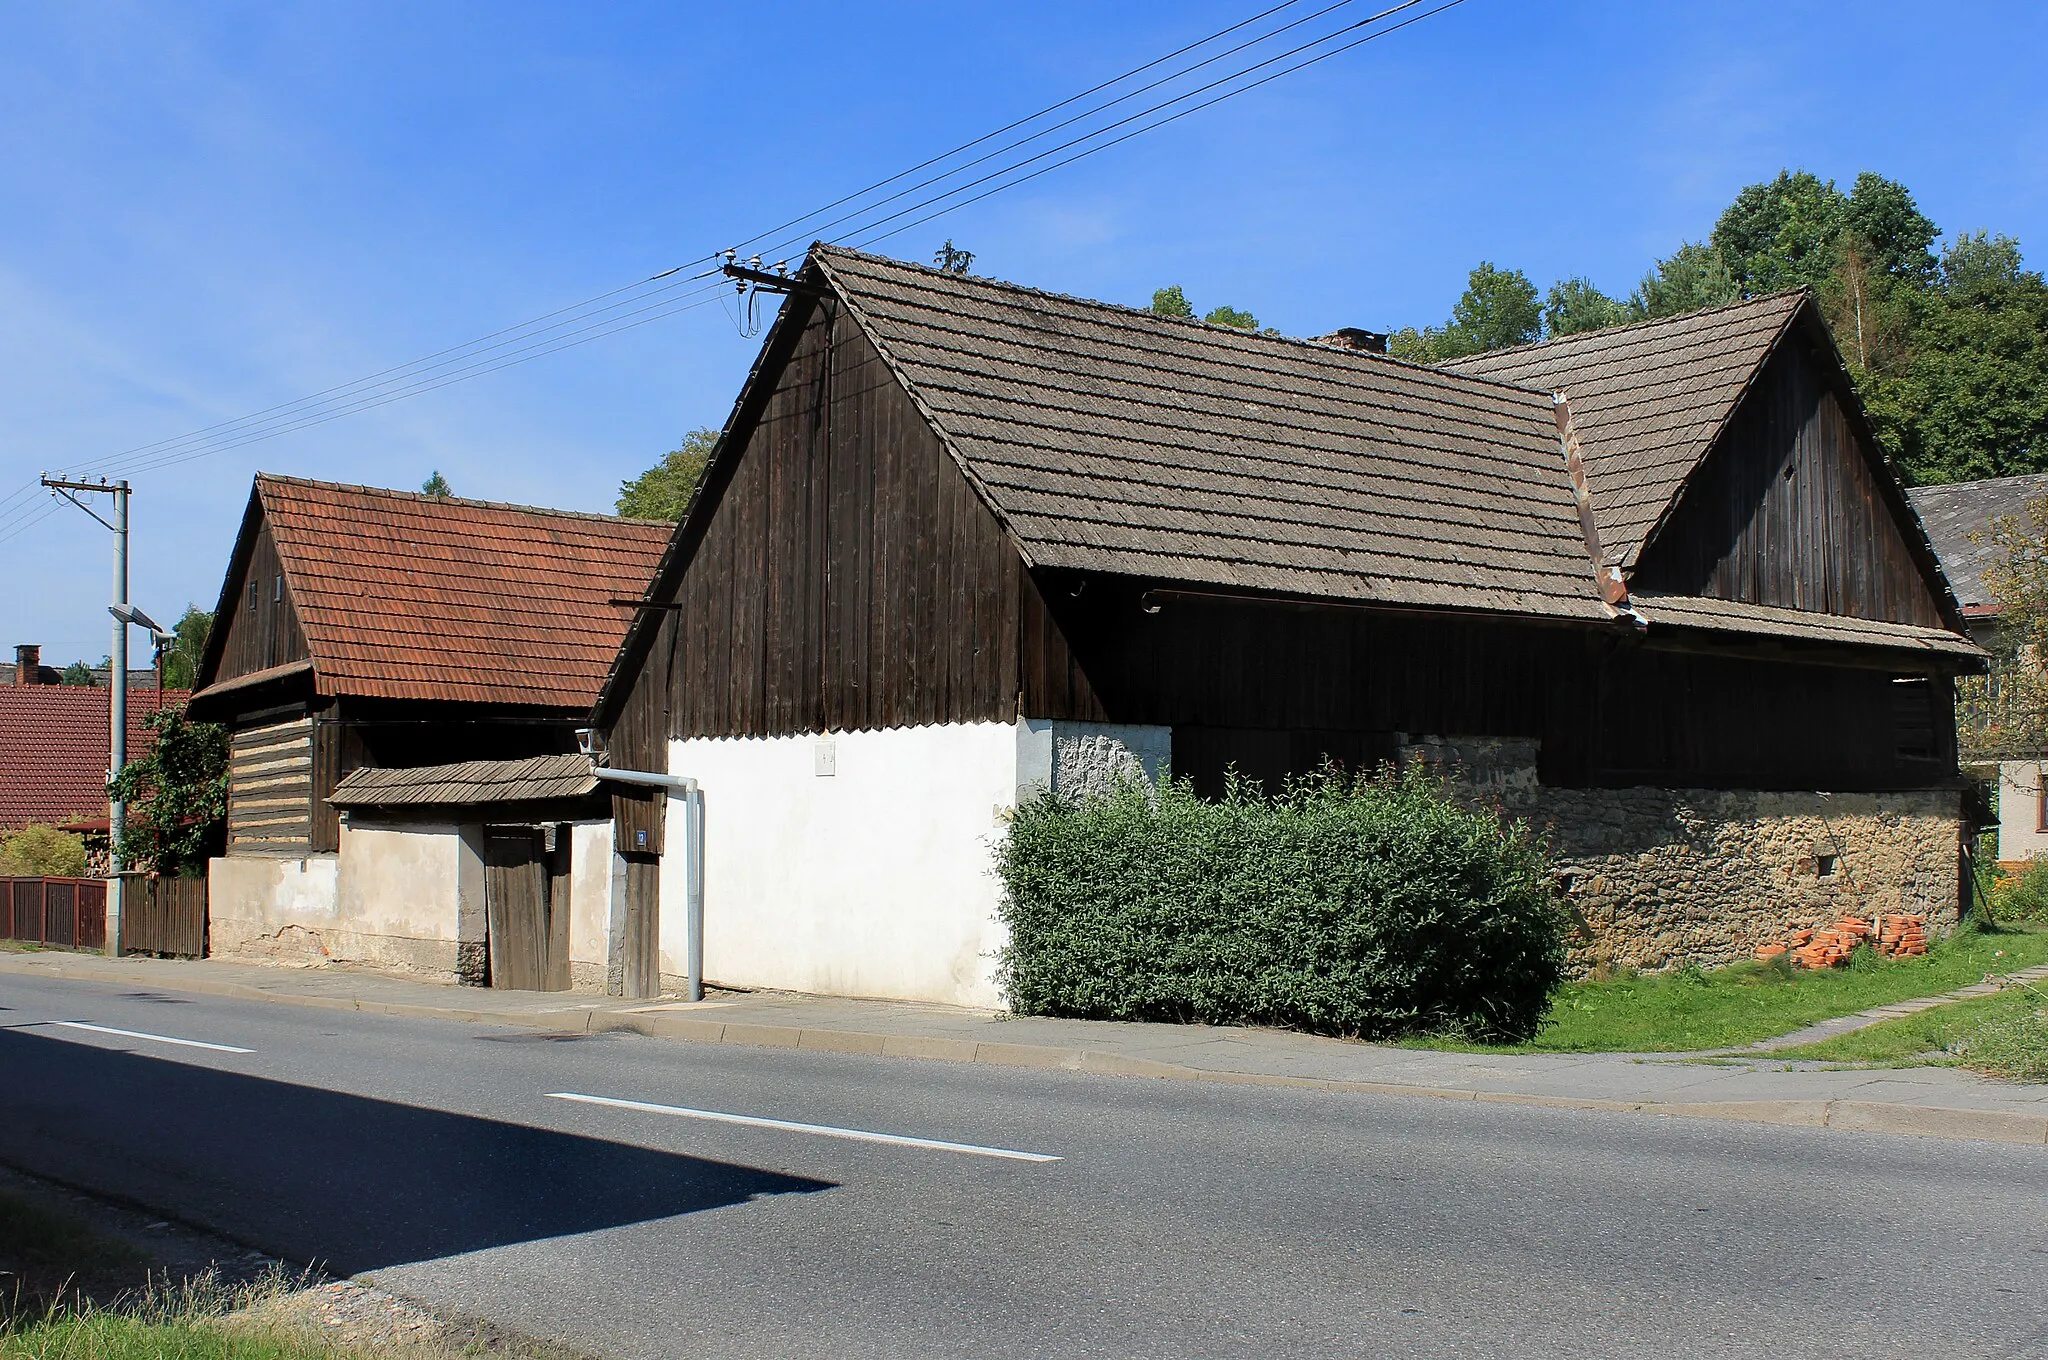 Photo showing: House No 12 in Člupek, part of Němčice, Czech Republic.